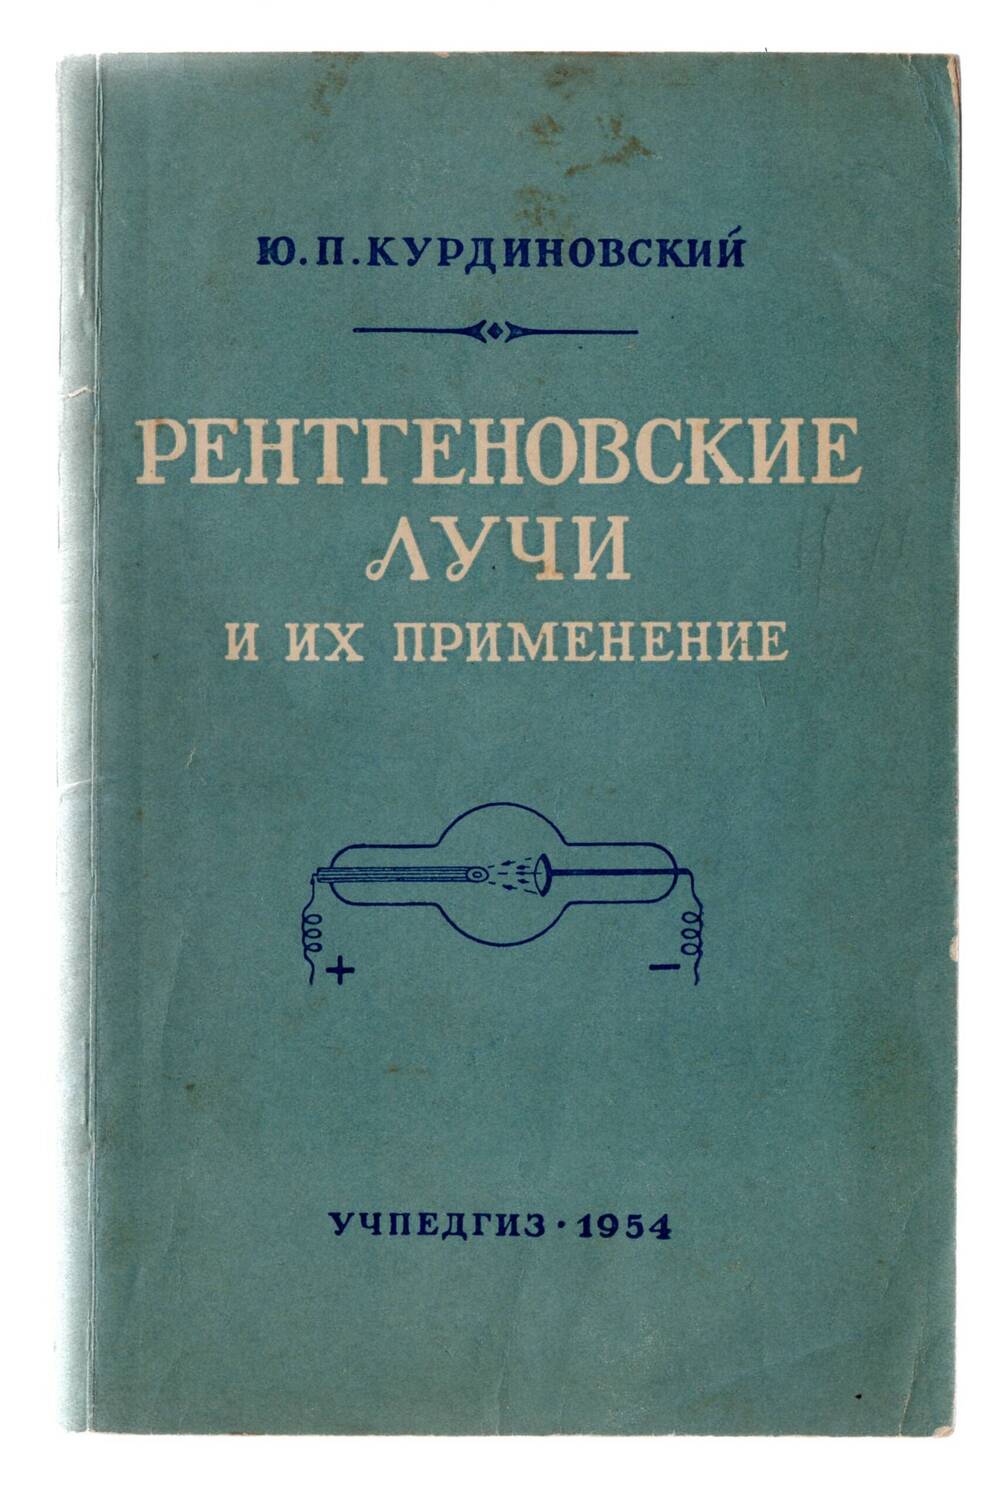 Книга Ю.П. Курдиновский «Ренгеновские лучи и их применение»  М. 1954г.